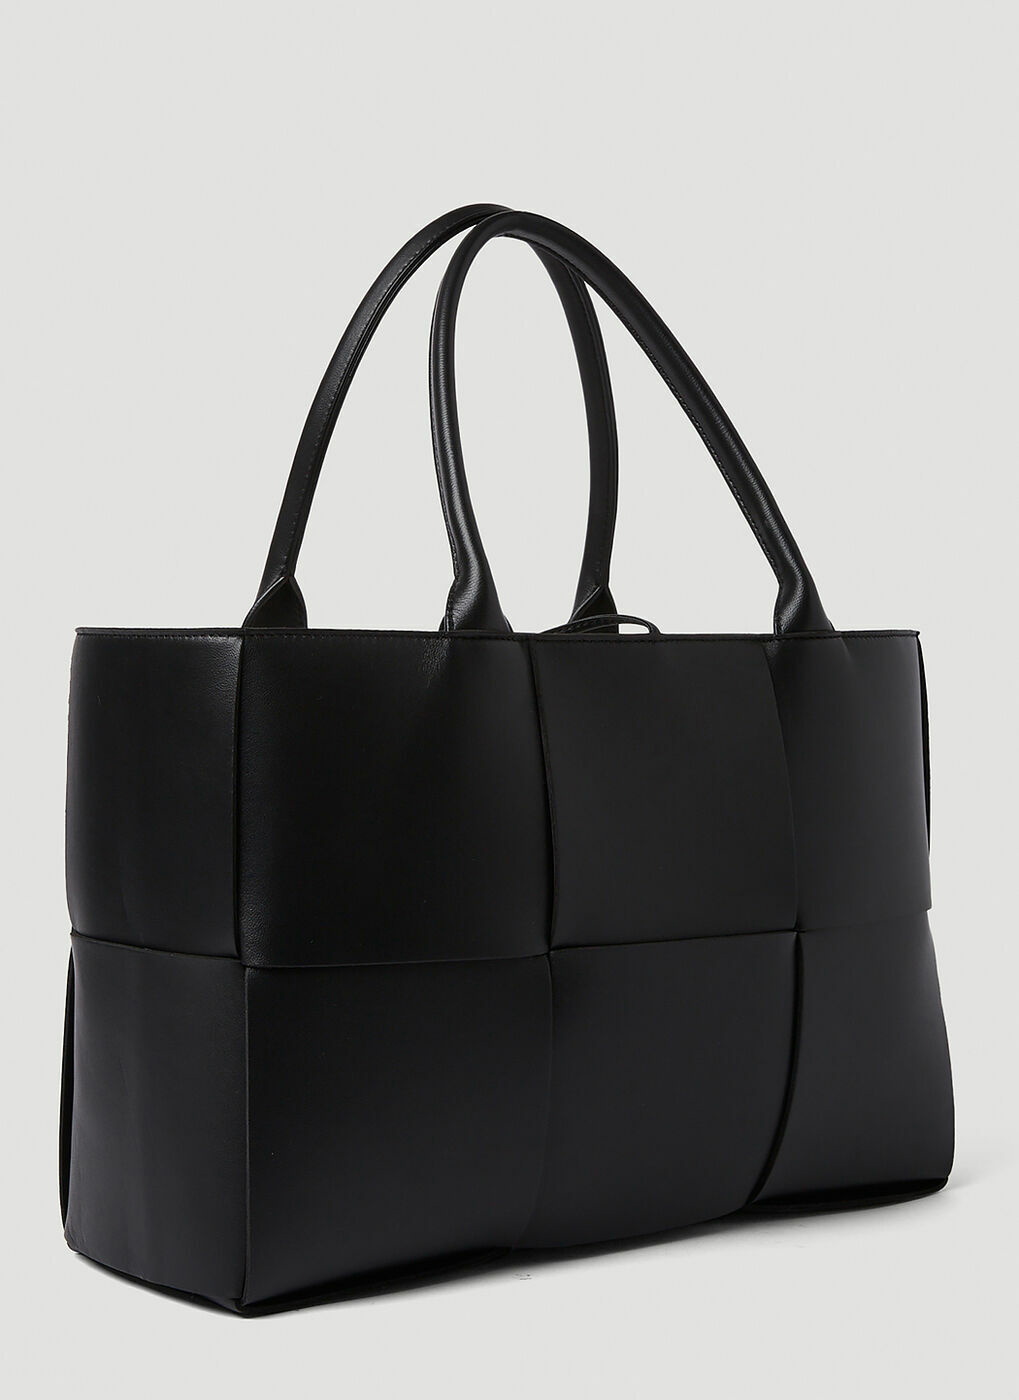 Arco Medium Tote Bag in Black Bottega Veneta